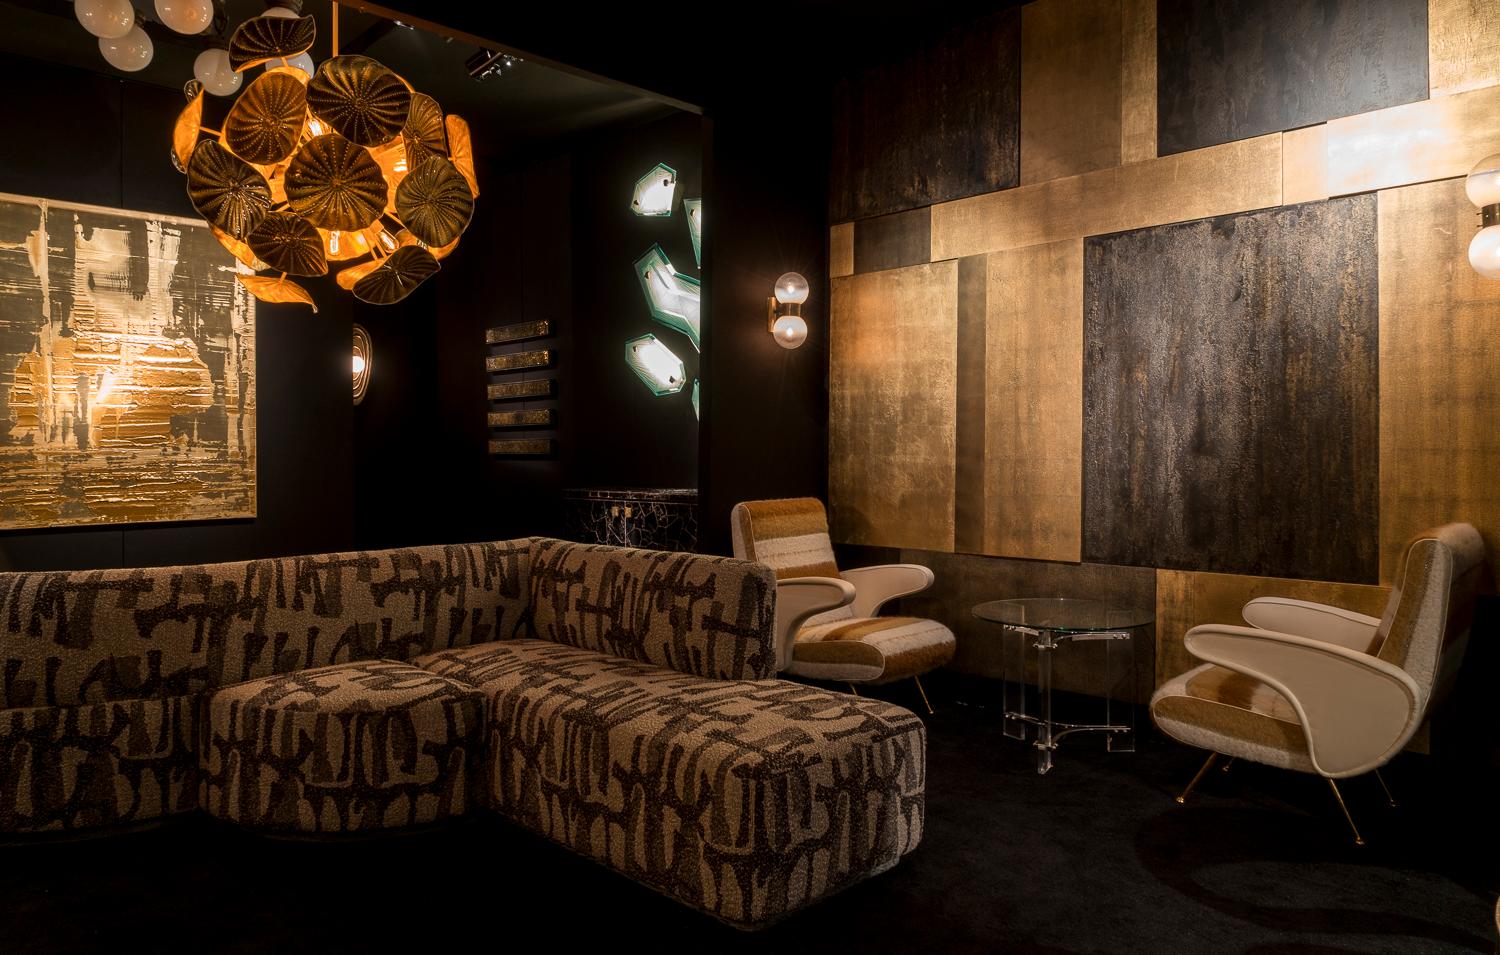 Le canapé Vincent a été conçu par The Charles Burnand Design Studio pour le Charles Burnand Collector's Lounge au Salon Art + Design, 2018. Il s'inspire à la fois de la période Art déco et du mouvement Memphis. Le design encapsule le design